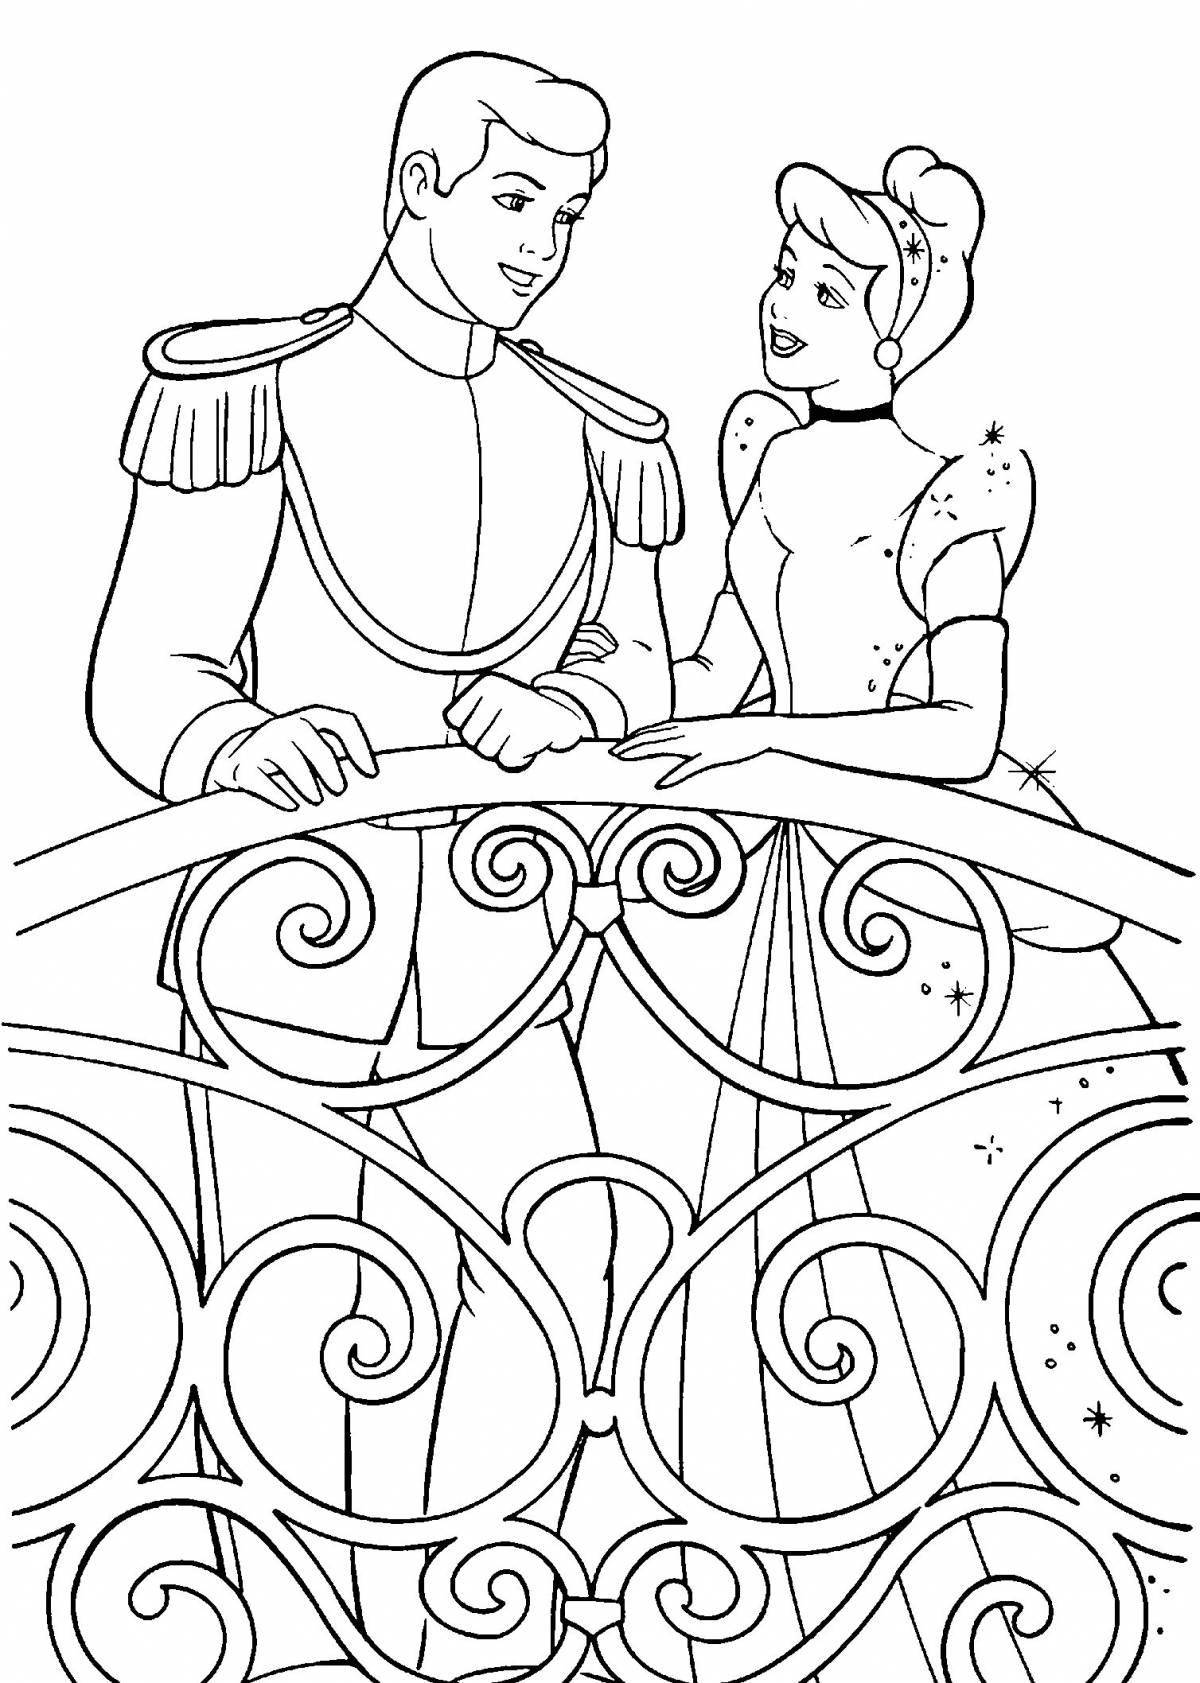 Cinderella princess coloring page